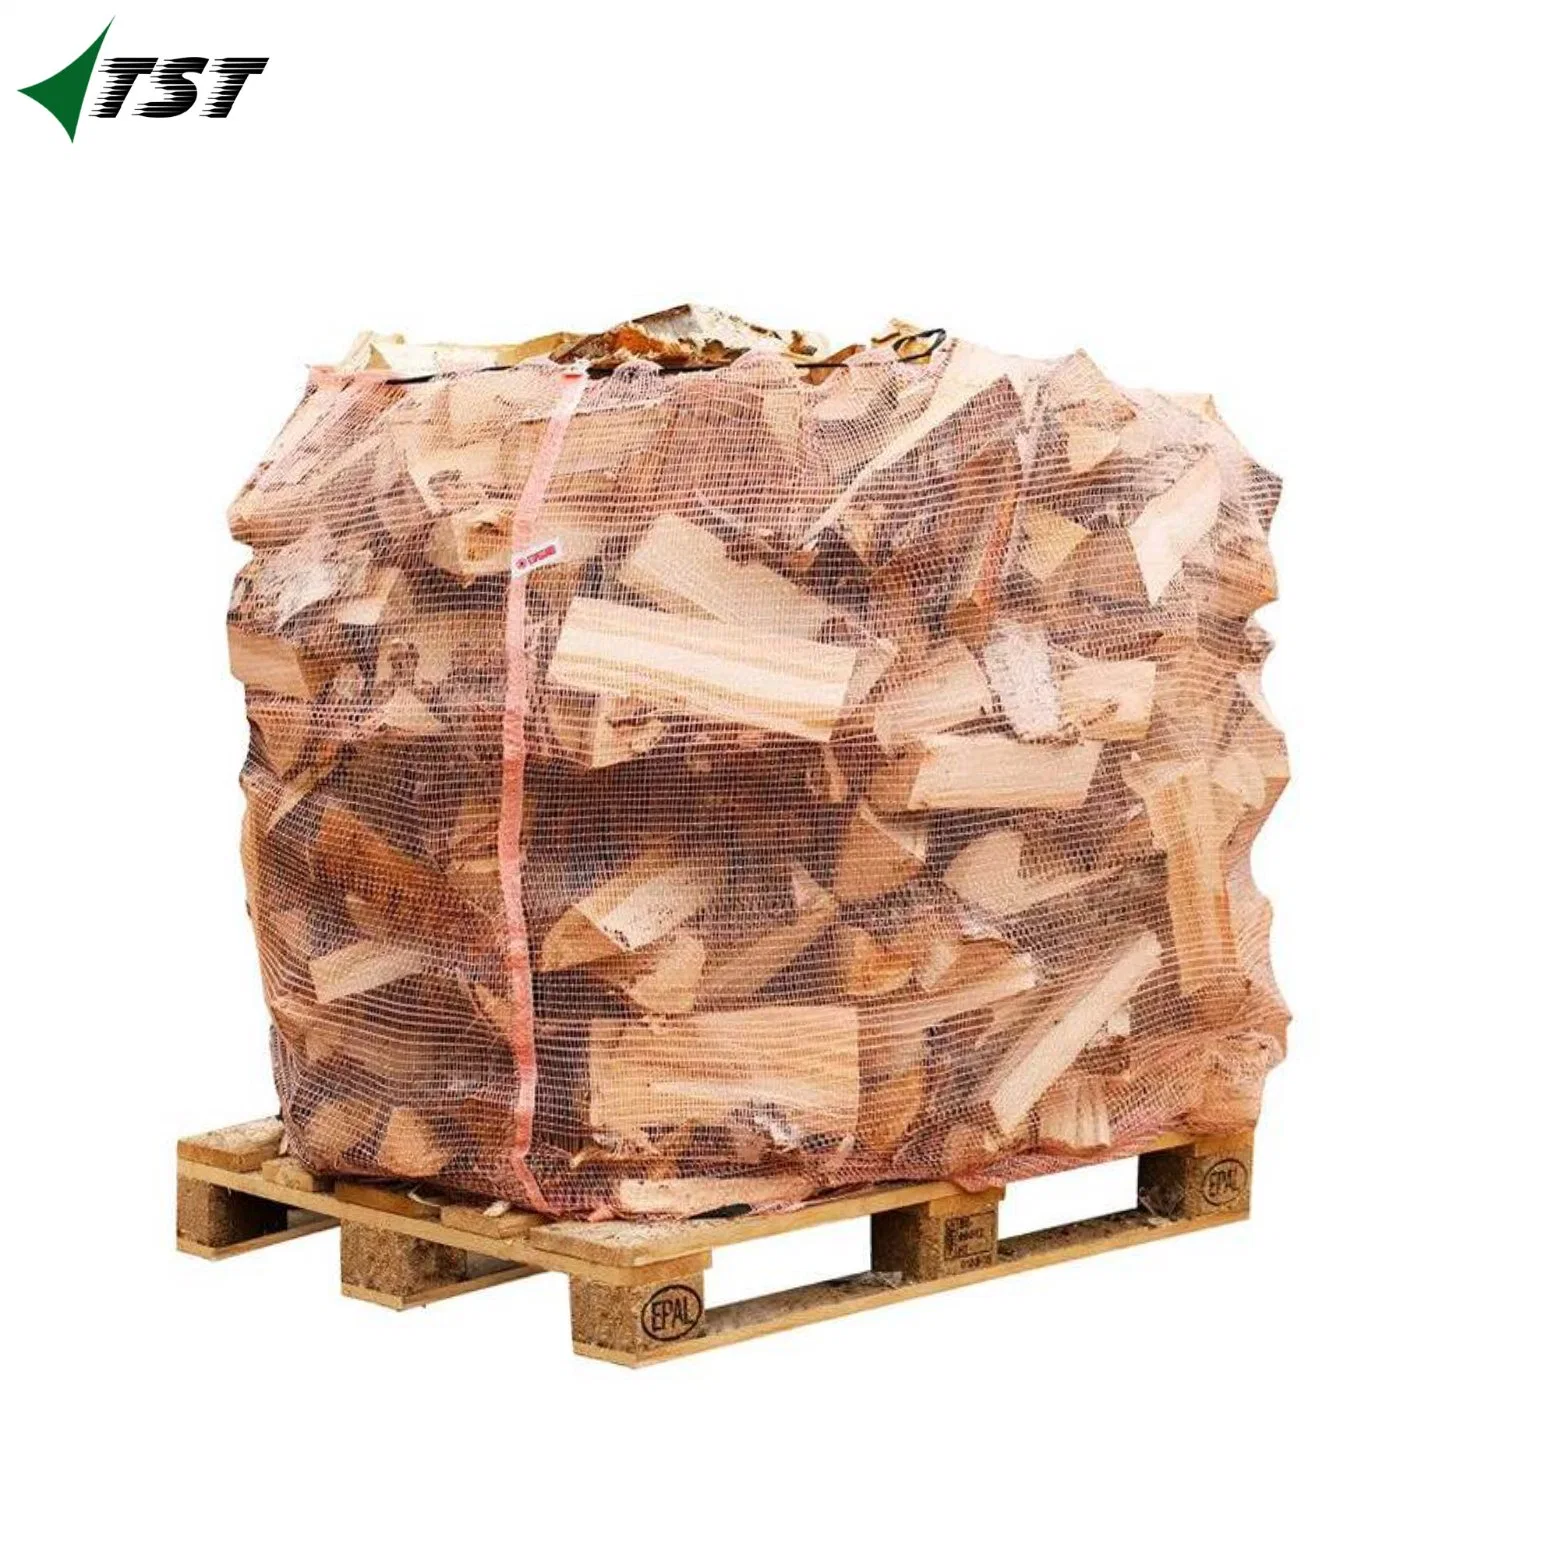 PP Woven Tubular Mesh Net Bag for Firewood Vegetable Packing